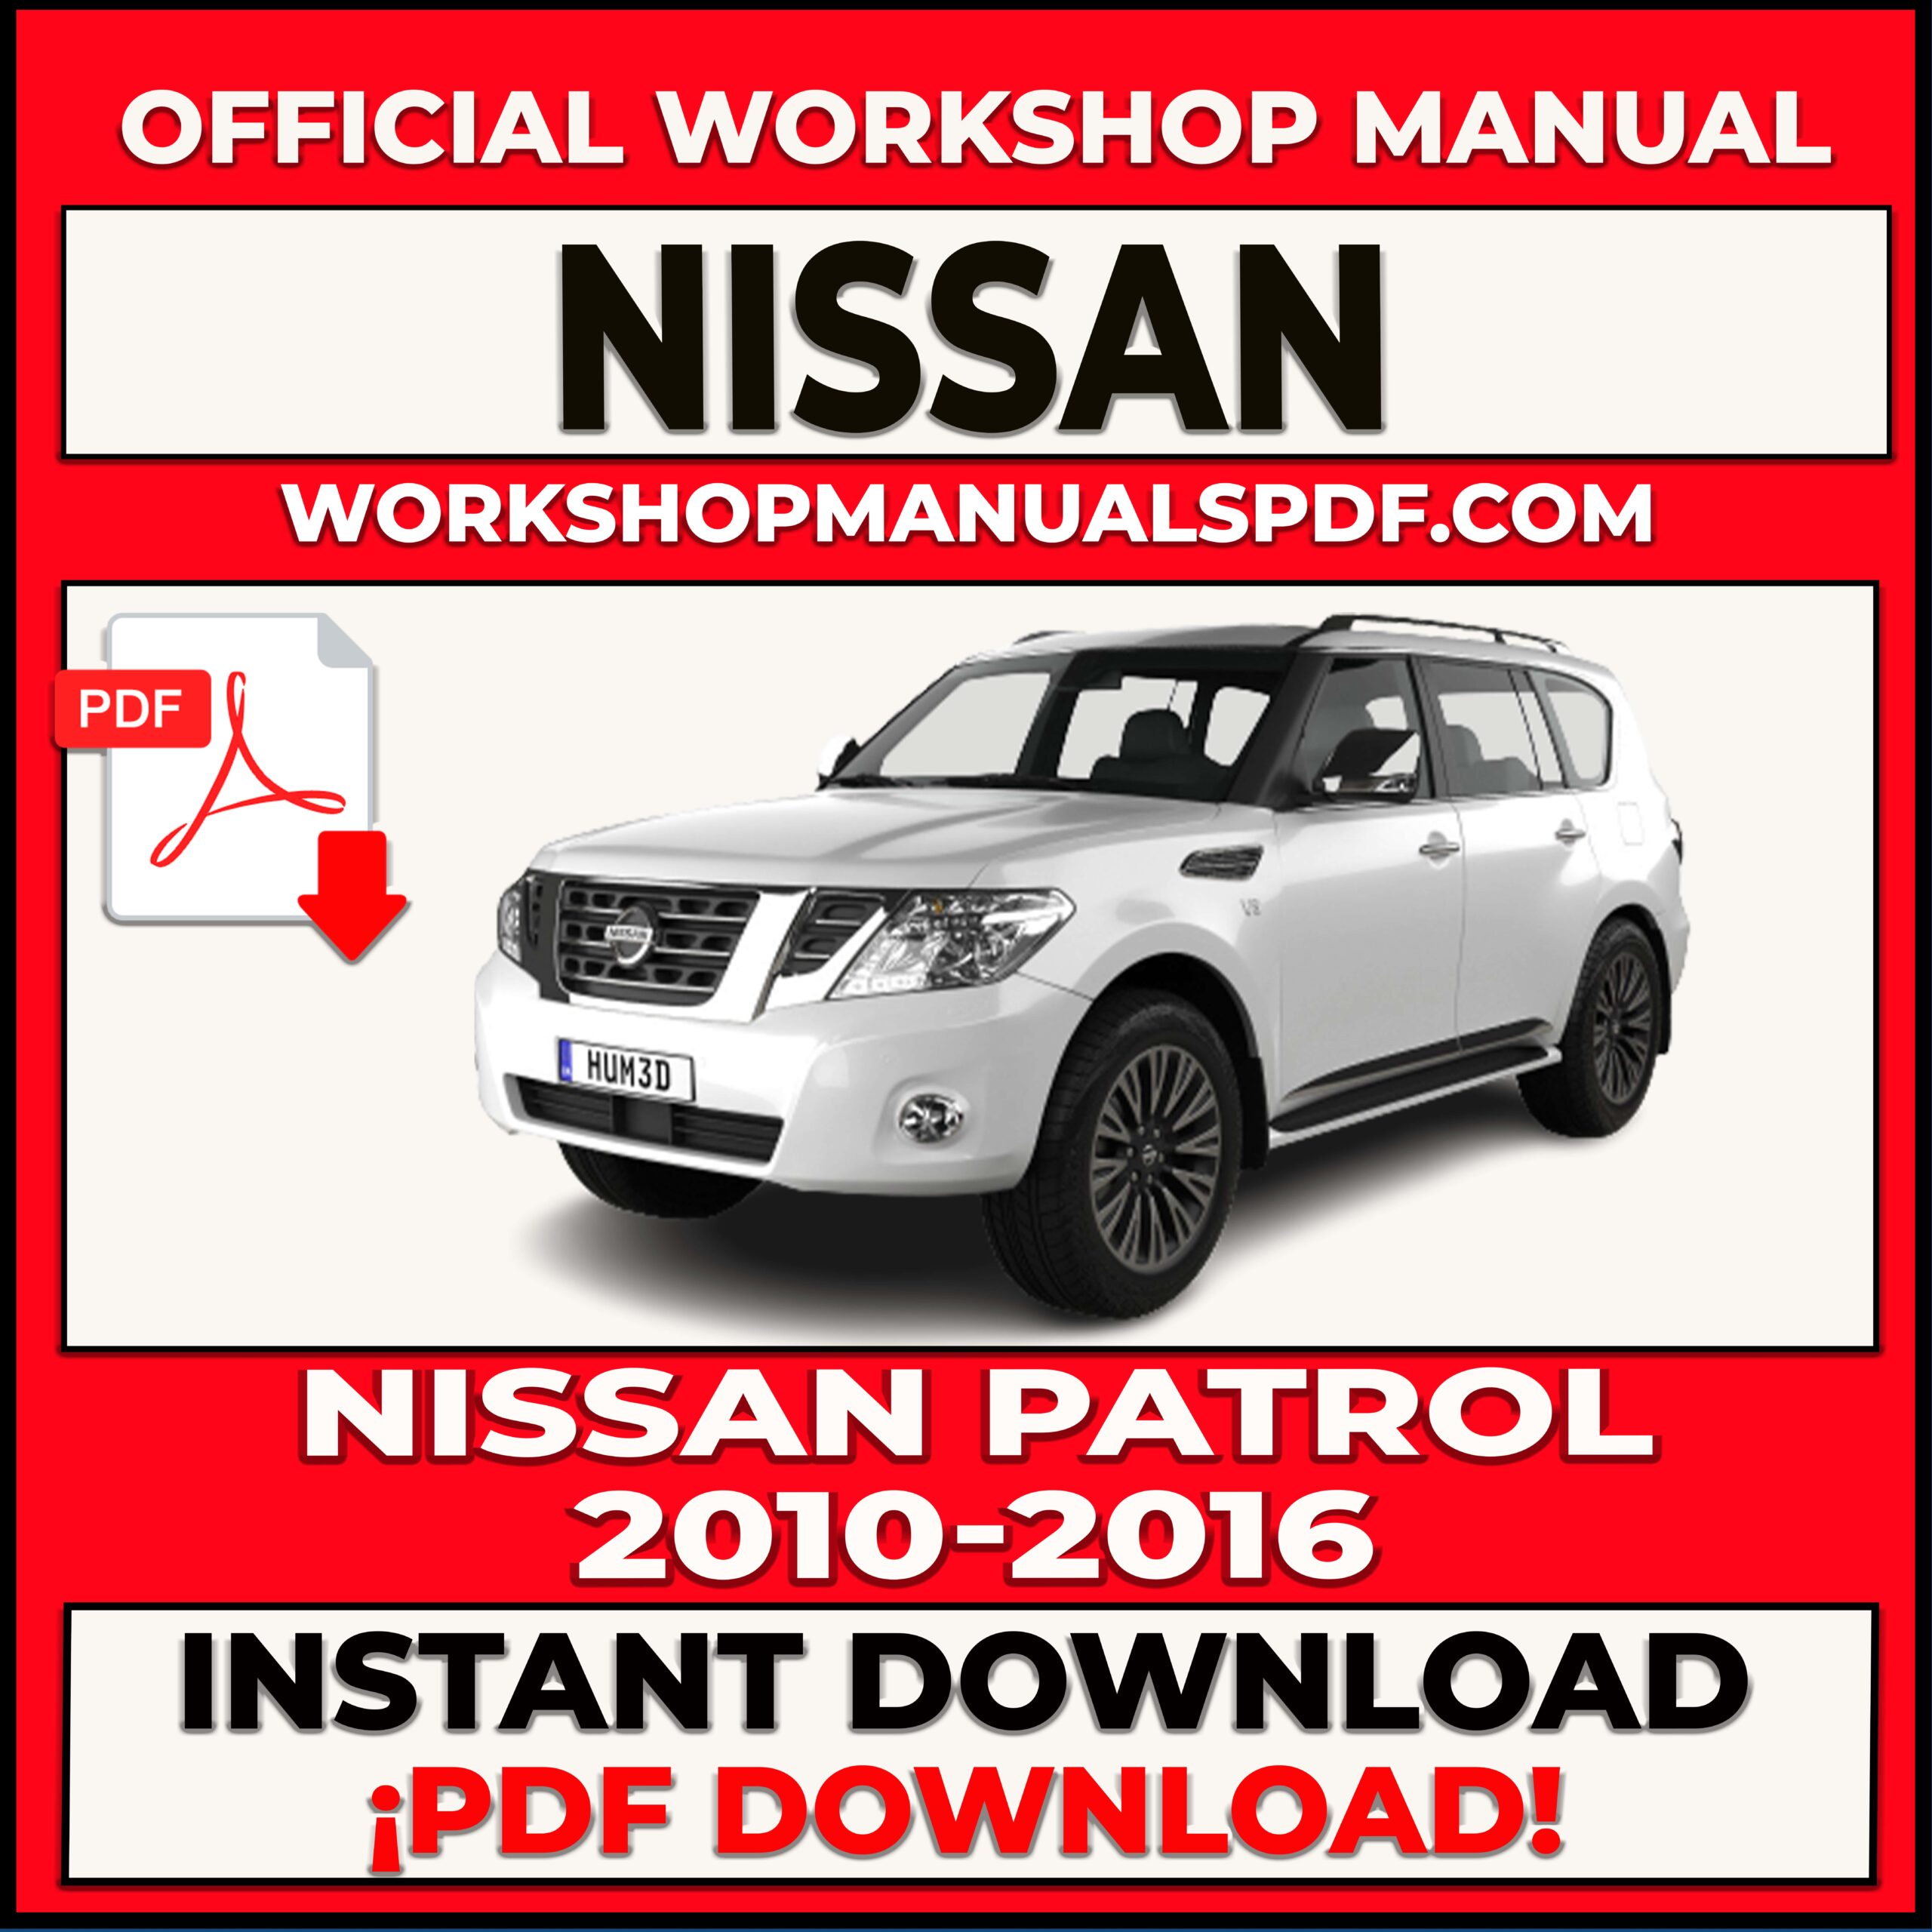 Nissan Patrol 2010-2016 Workshop Repair Manual